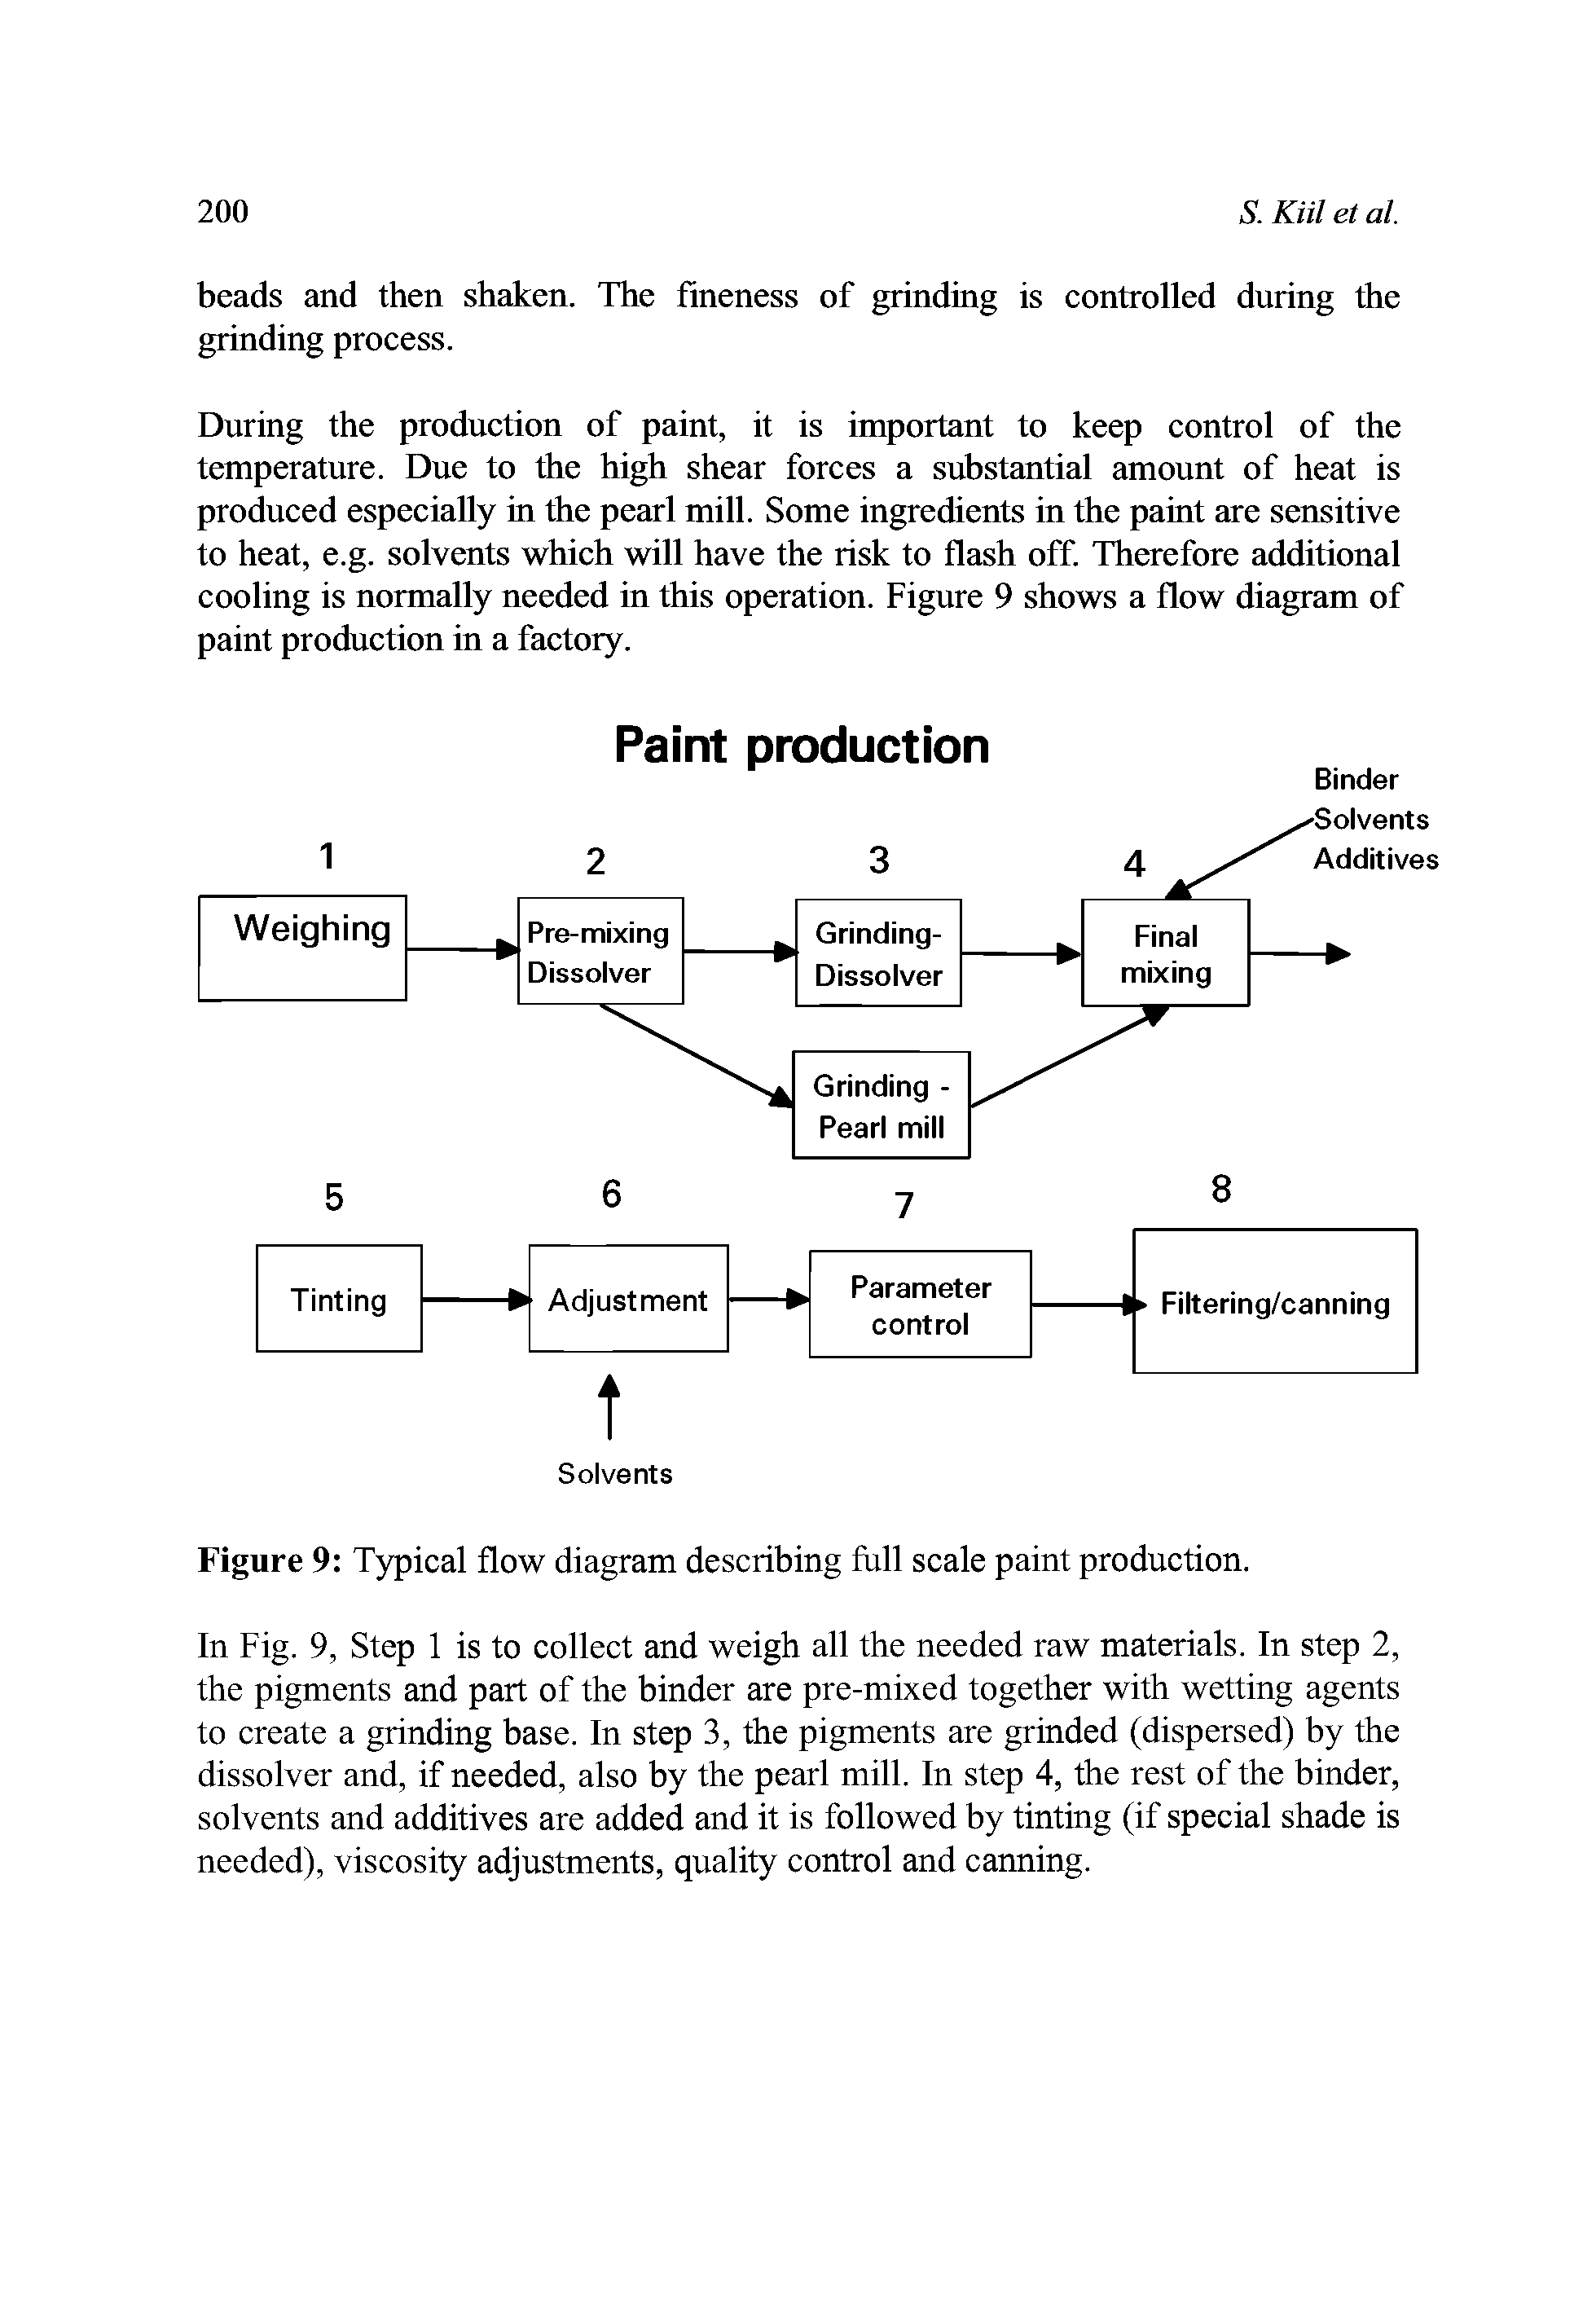 Figure 9 Typical flow diagram describing full scale paint production.